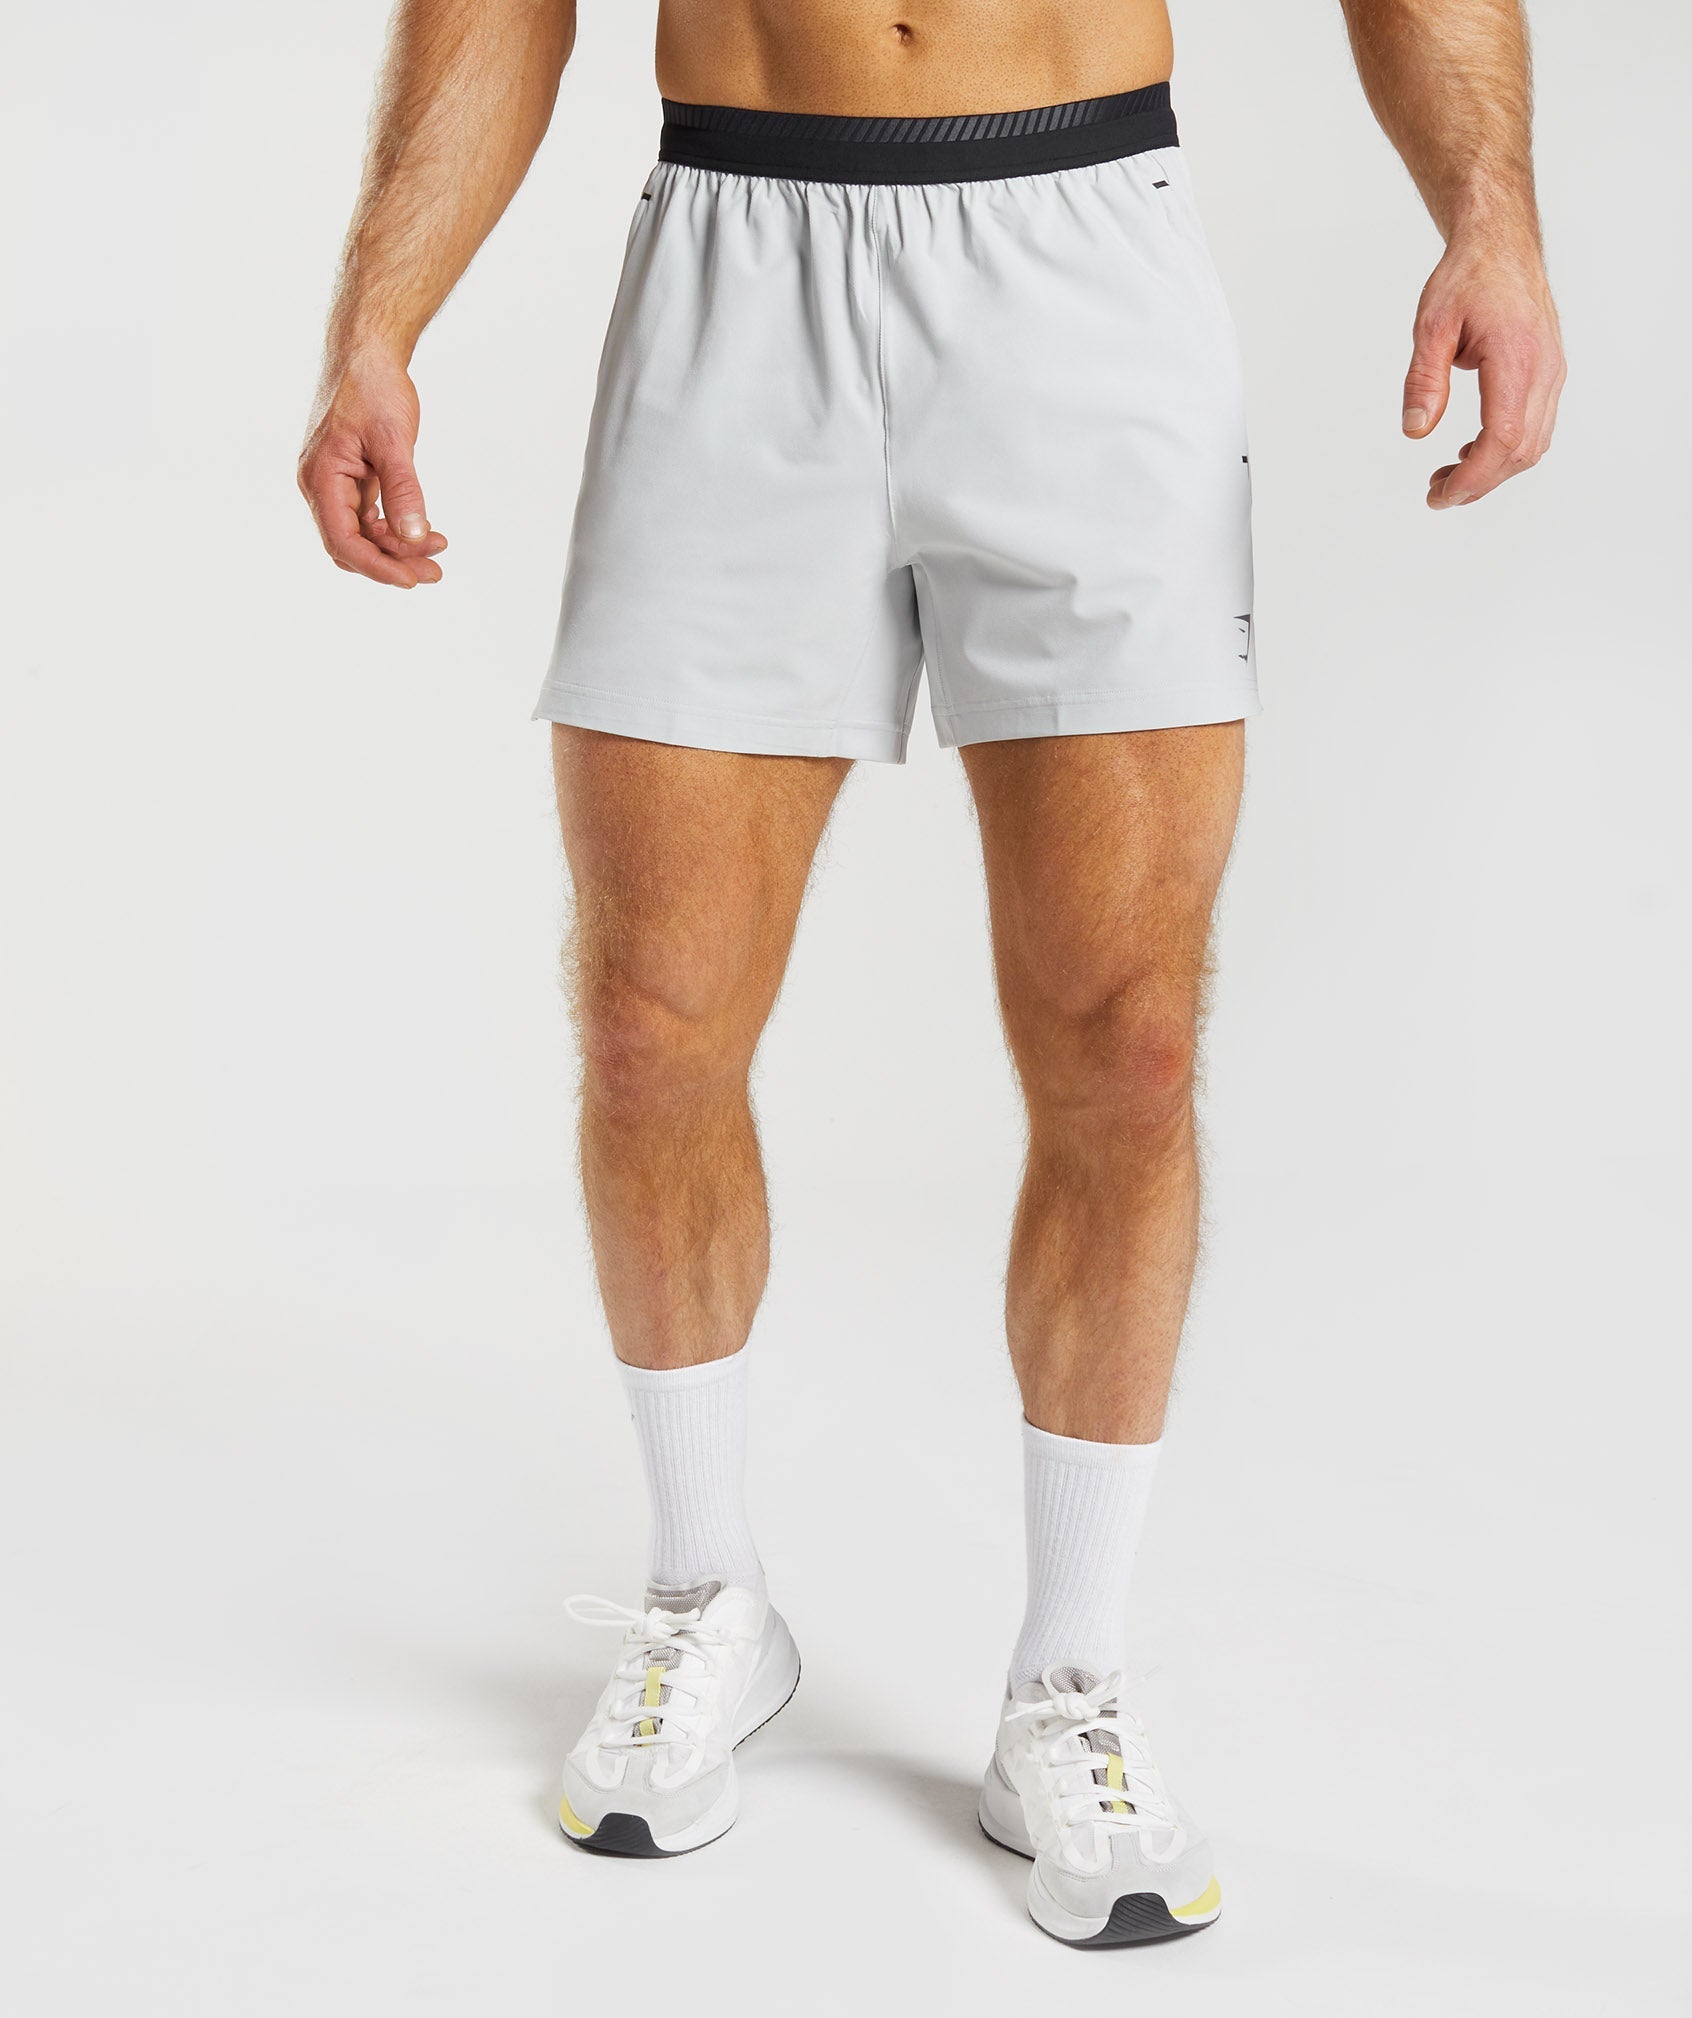 Apex 5 Hybrid Shorts